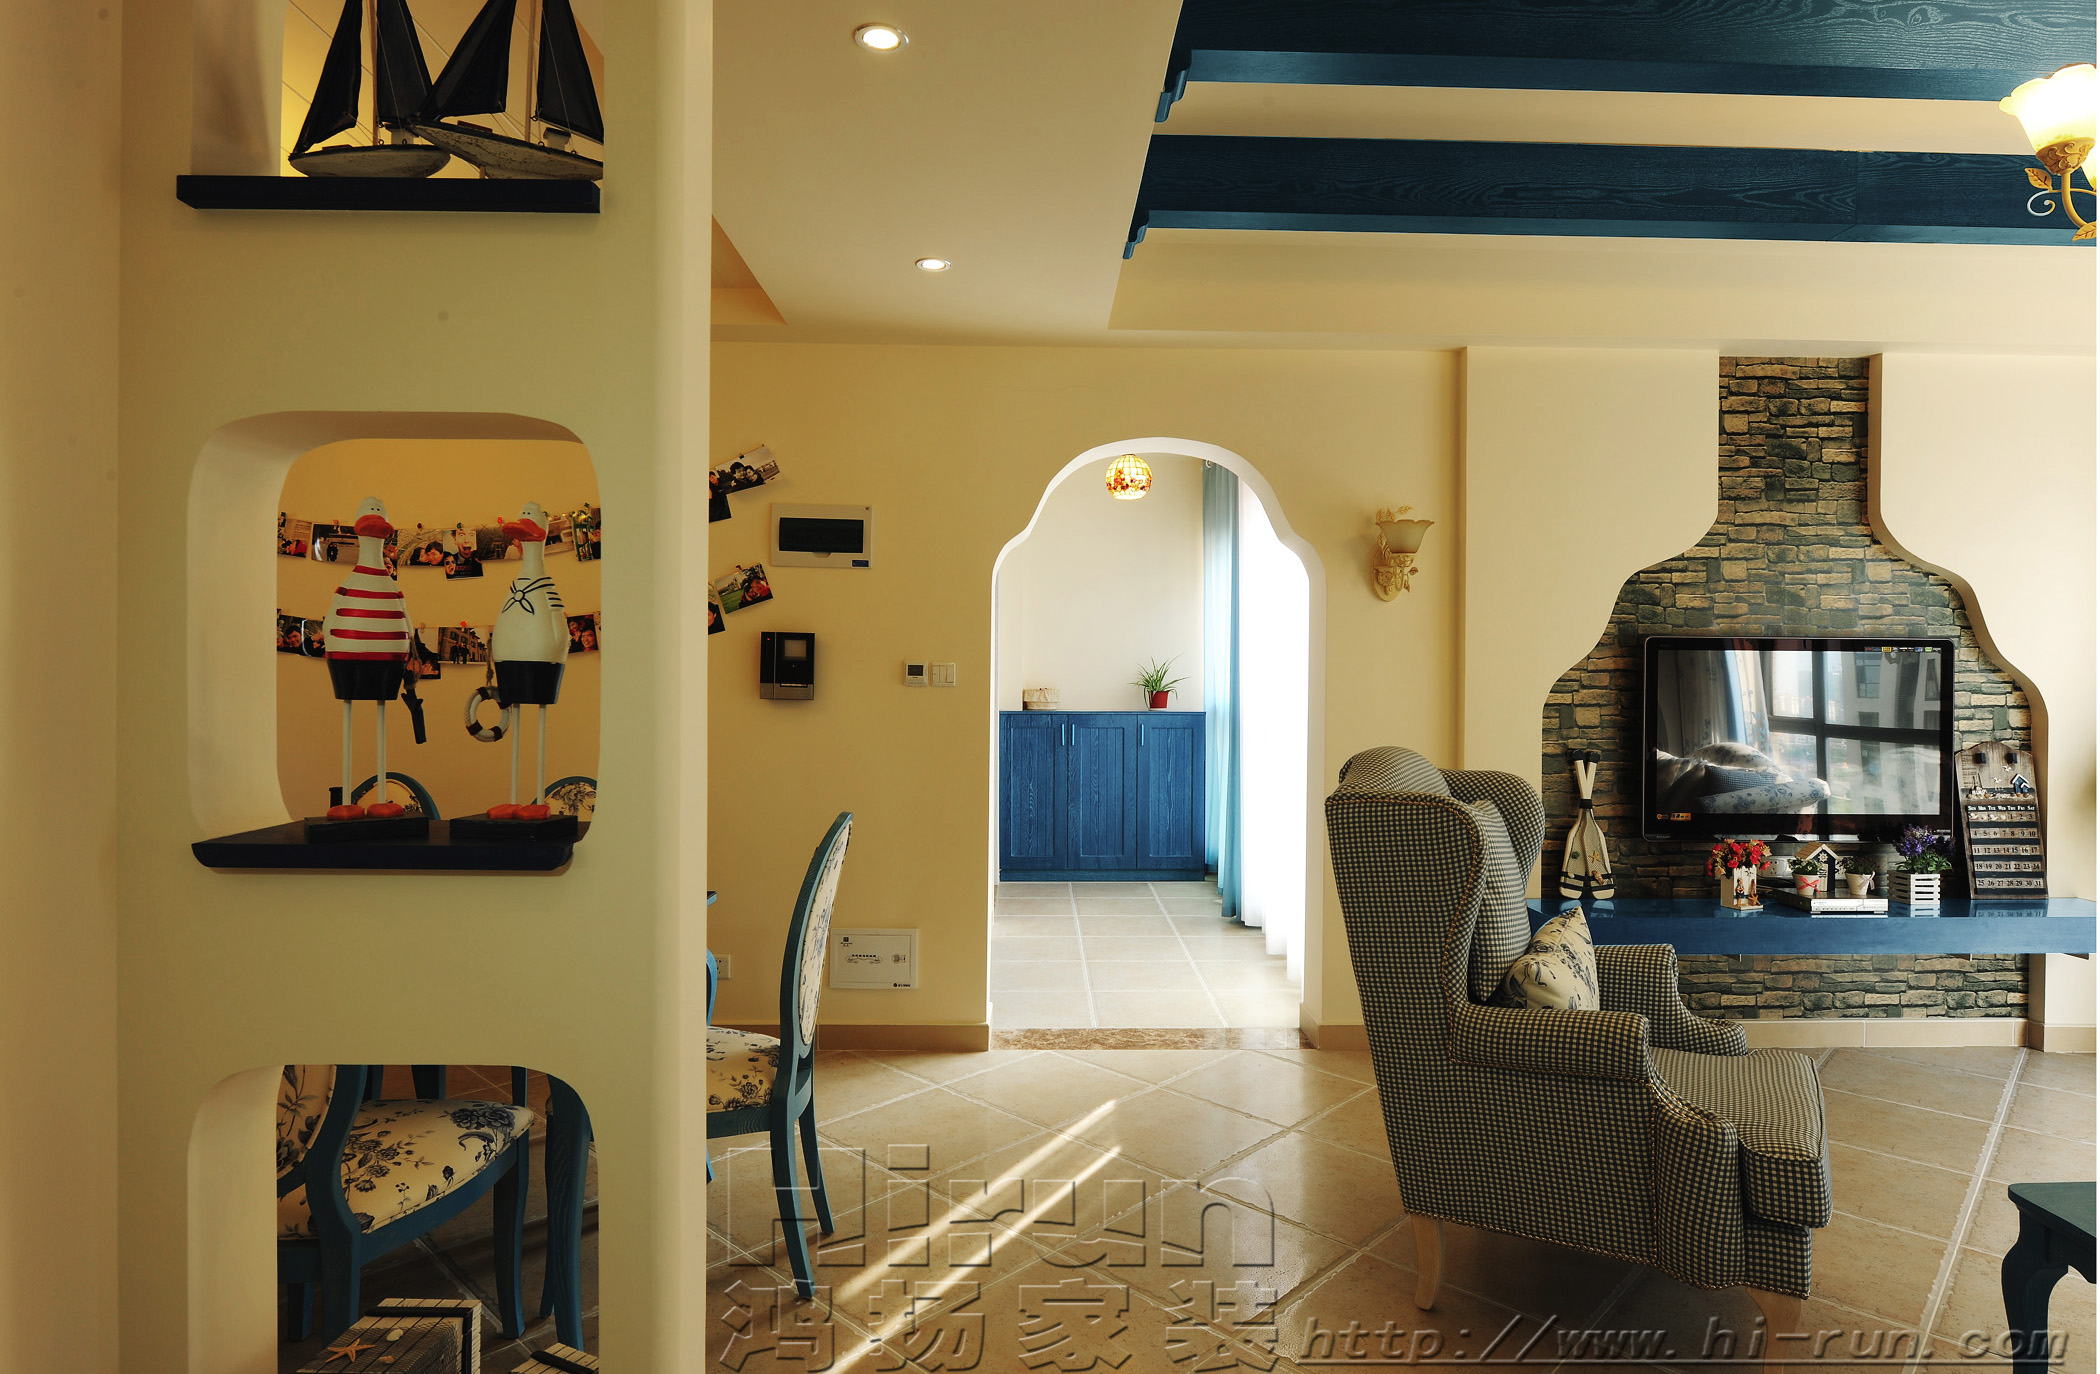 三居 爱琴海洋 小资 客厅图片来自鸿扬家装在旭辉国际广场的分享